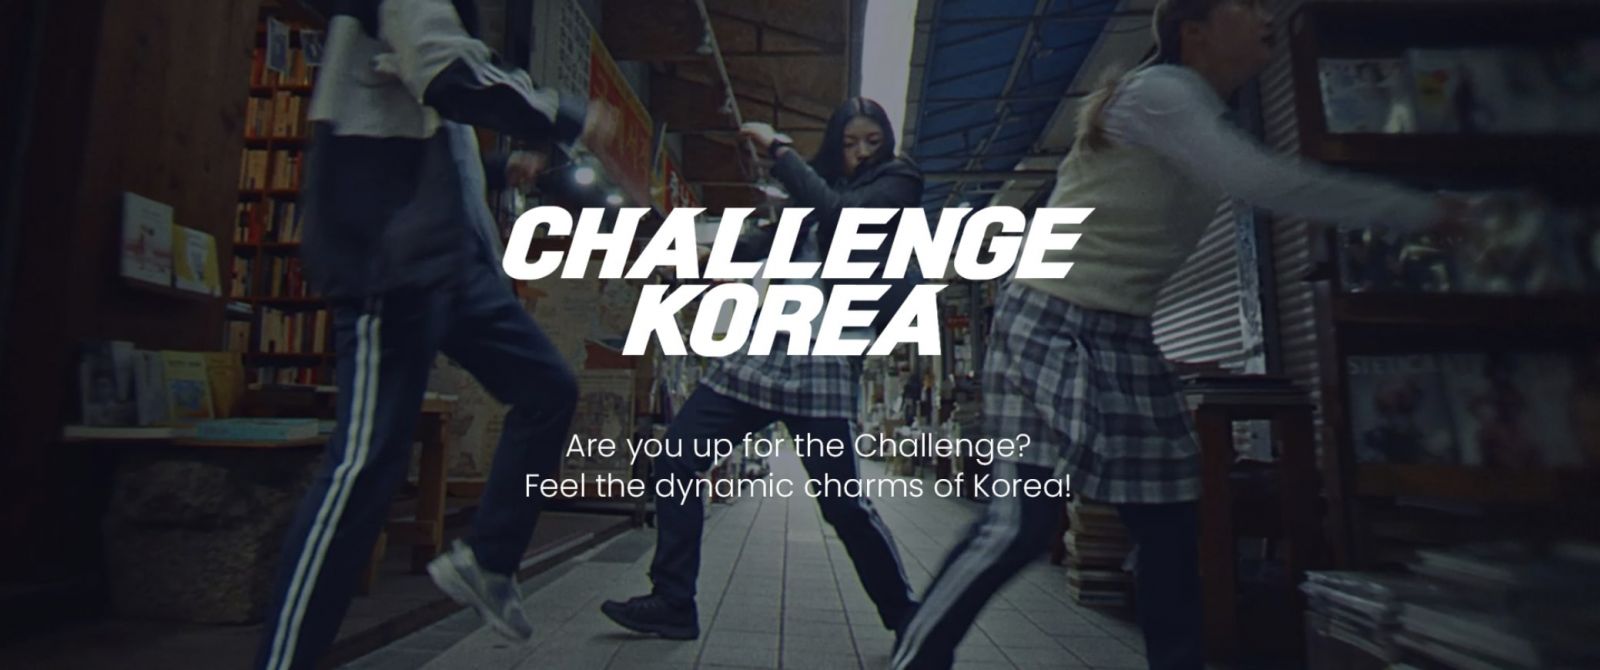 challenge korea week